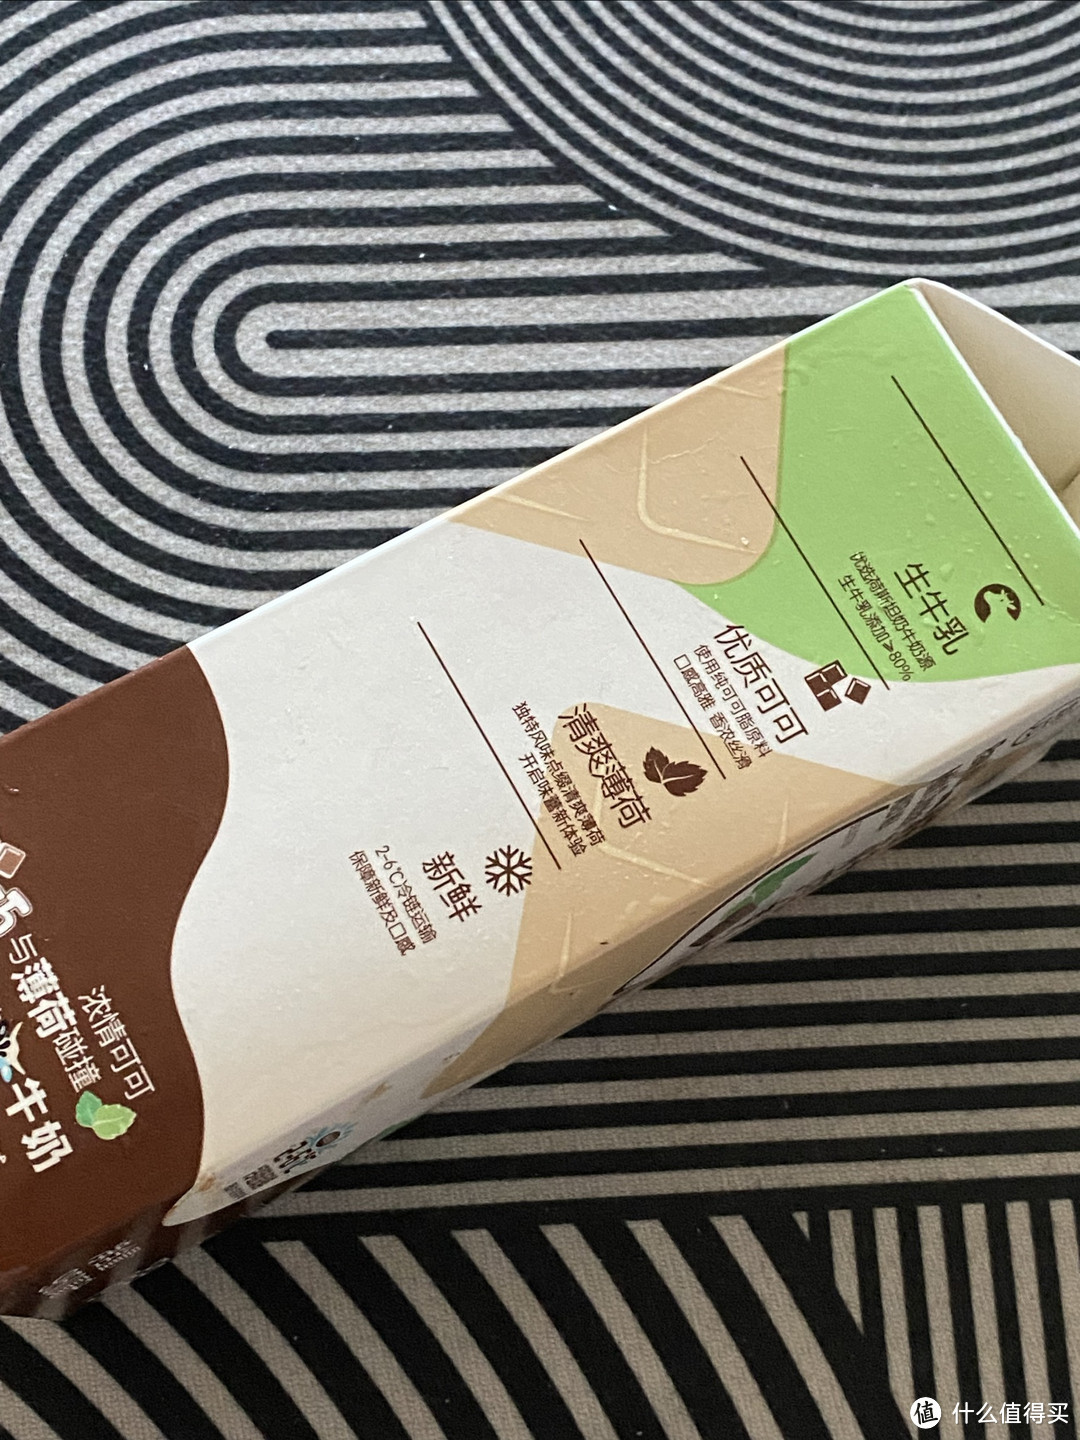 盒马鲜生夏日饮品避坑指南，生牛乳薄荷巧克力奶别买。